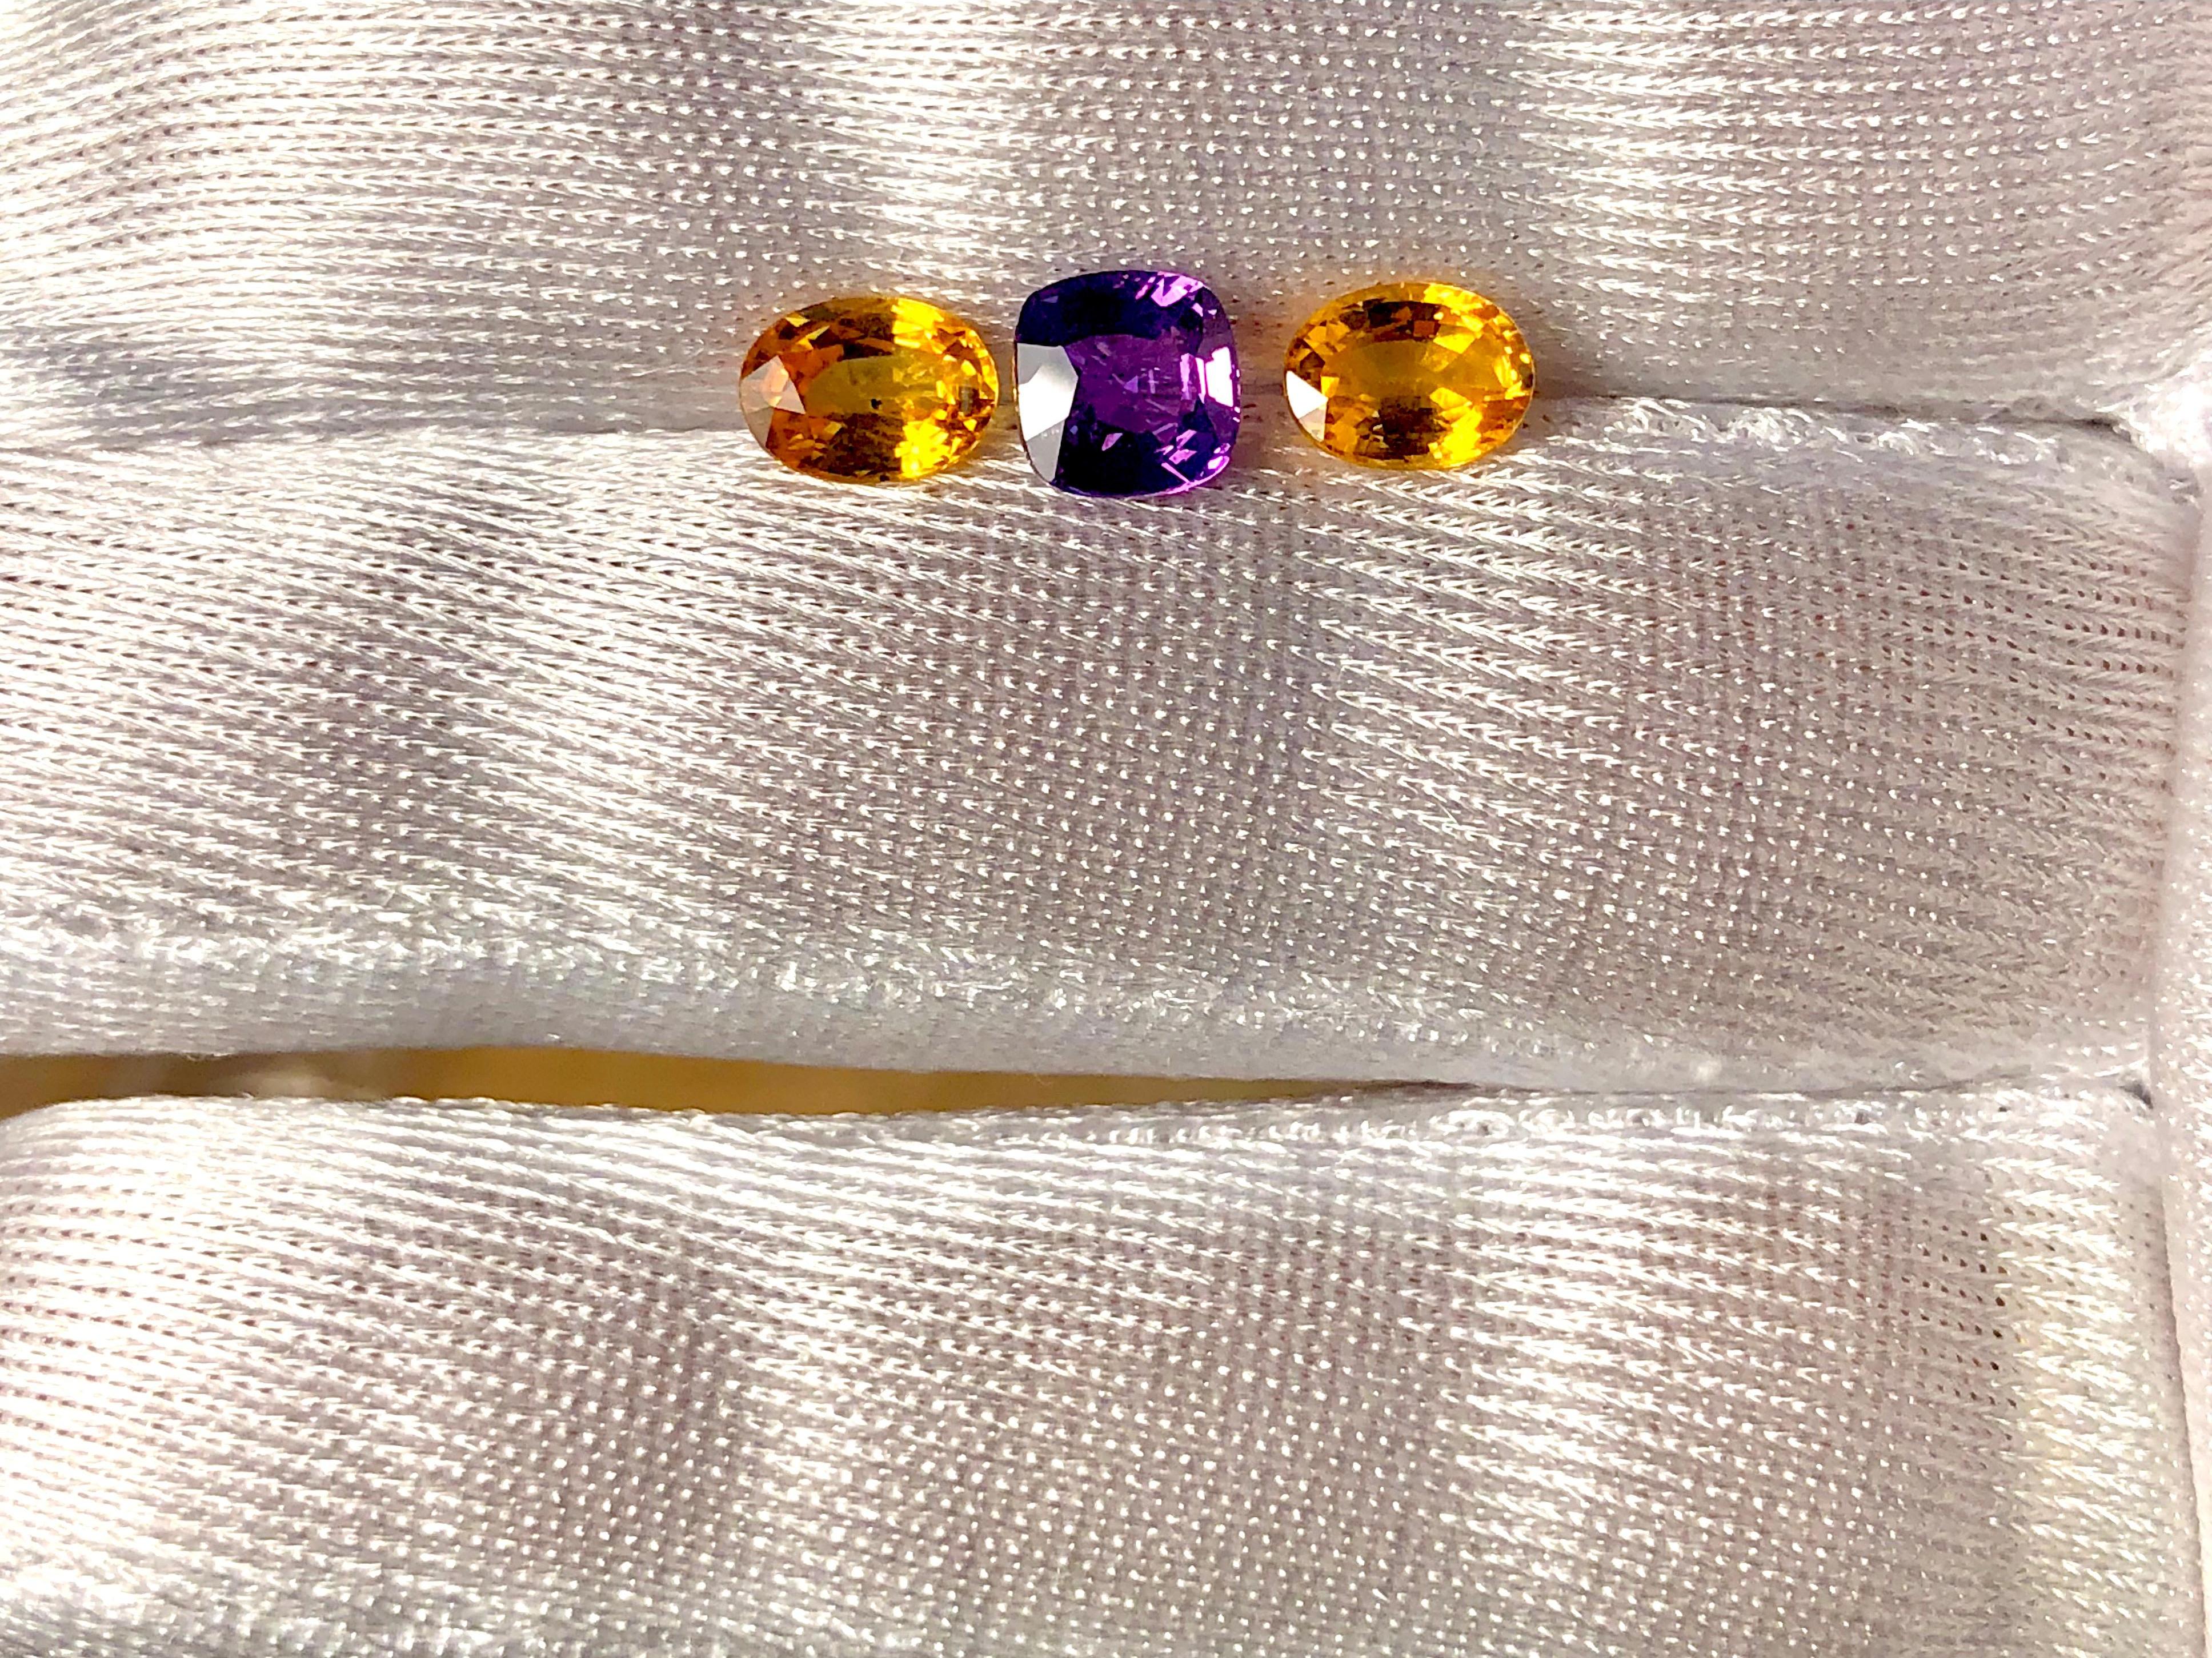 Saphirs à trois pierres avec, au centre, un saphir de Ceylan violet de haute qualité, taillé en coussin, pesant 1,48 carats, et deux saphirs de Ceylan jaunes vibrants, taillés en ovale, pesant 2,18 carats.  
Le trio de saphirs est d'une qualité et